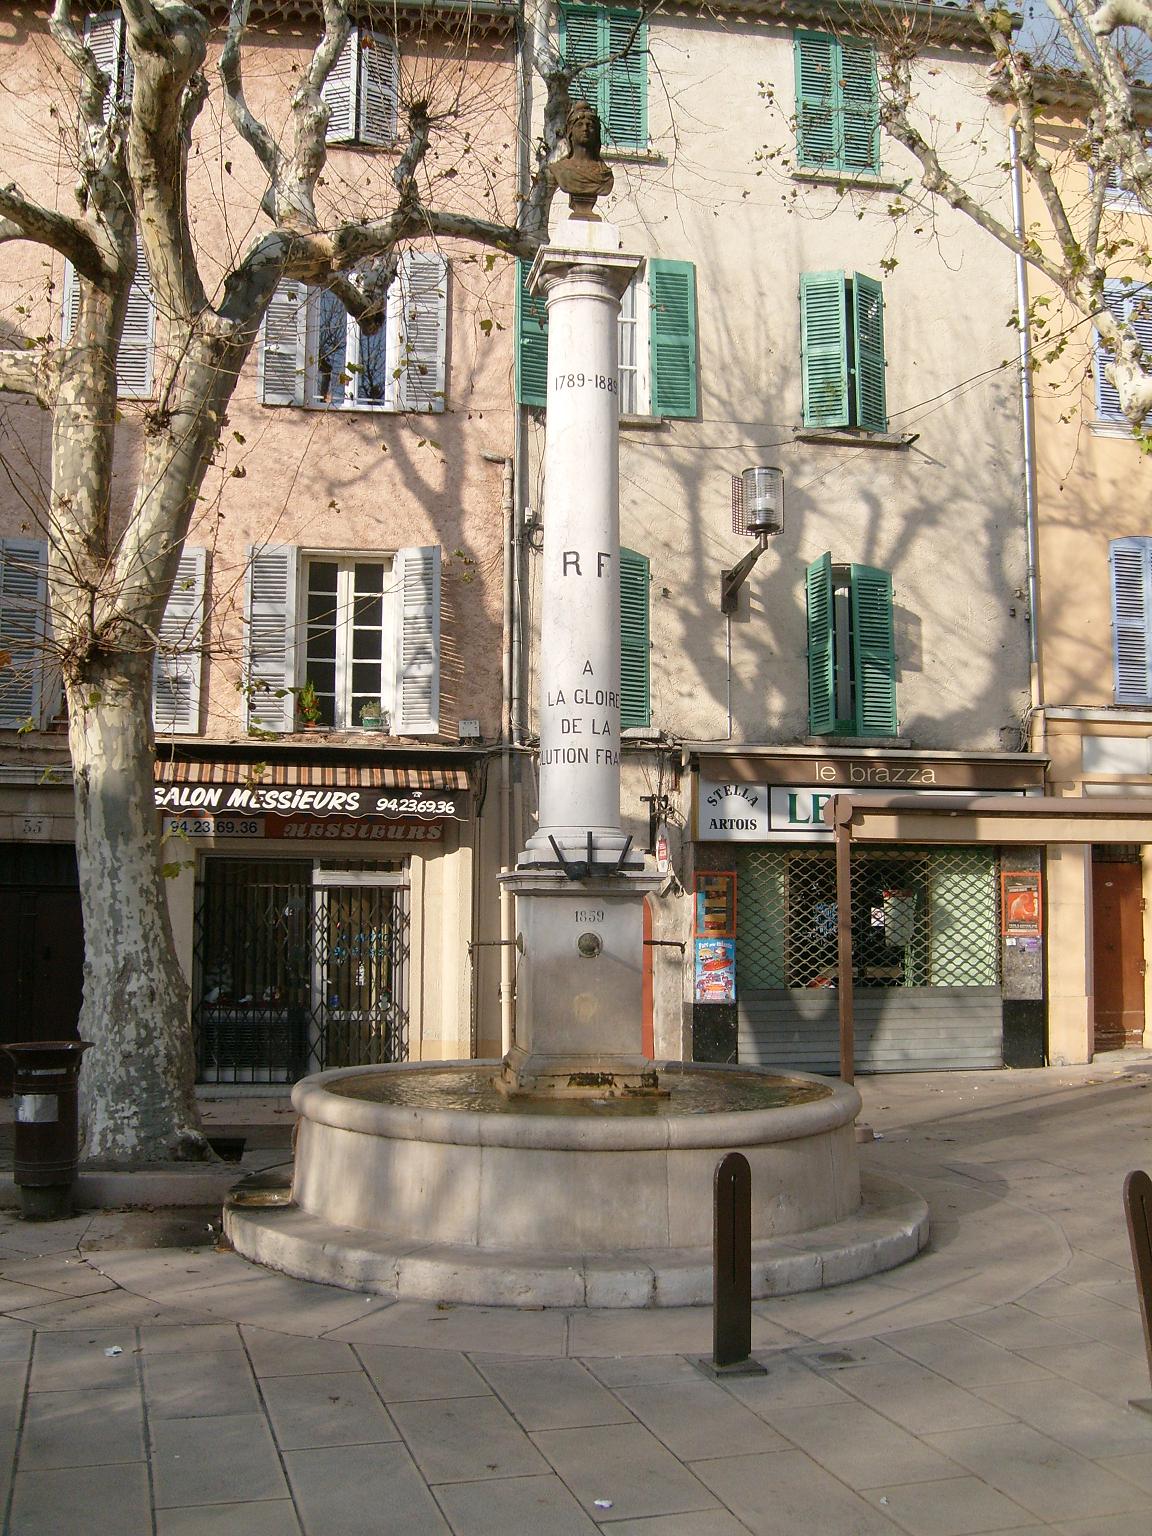 10/01/2010, La Valette: Fontein op plein in 
oude centrum. Tekst op zuil vermeldt: 
'À la gloire de la Révolution Française' =
ter ere van de Franse Revolutie (1789)